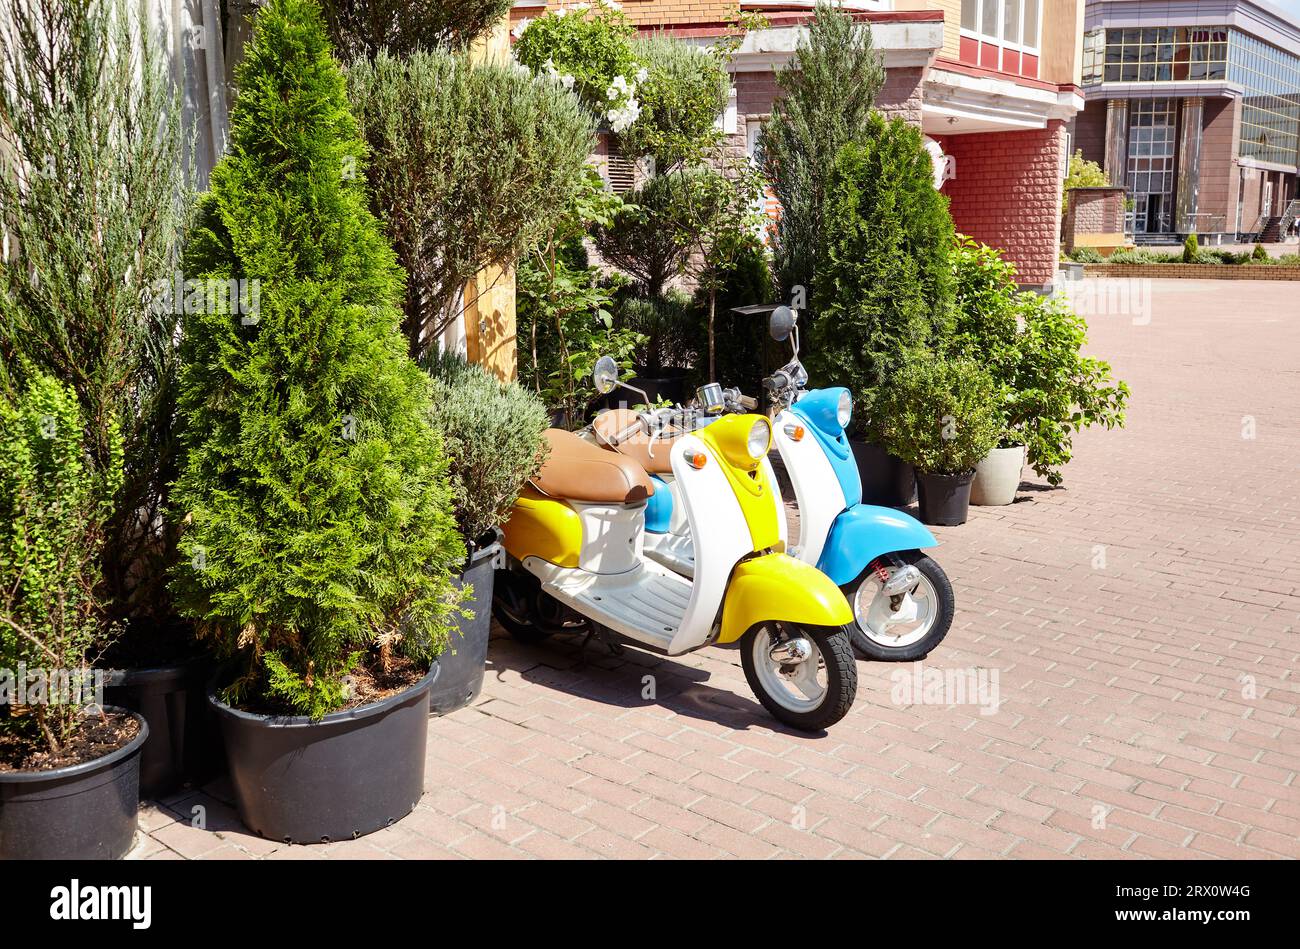 Petit café de ville avec une végétation luxuriante à Kiev, Ukraine. Deux cyclomoteurs rétro pour le service de livraison en face Banque D'Images